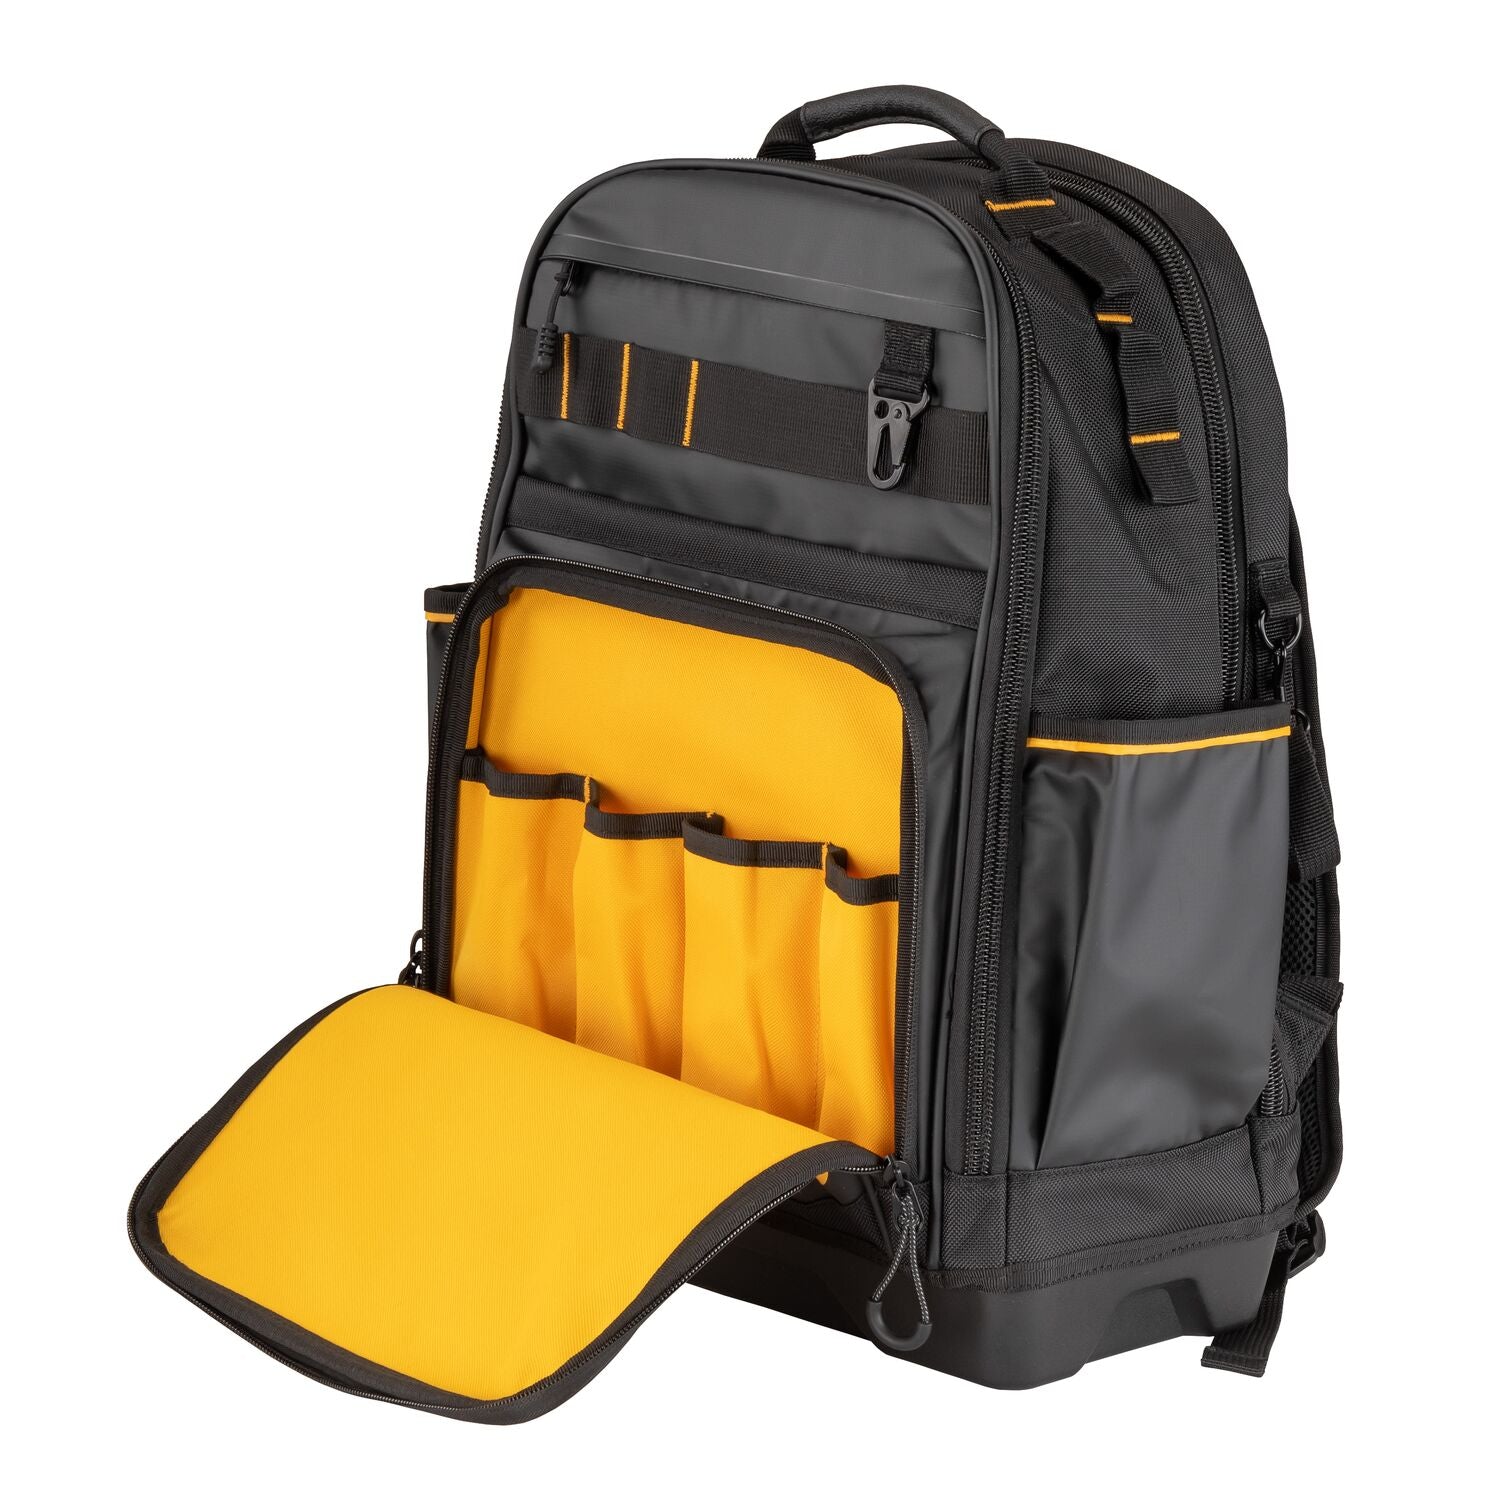 Dewalt DWST560102 - PRO Backpack